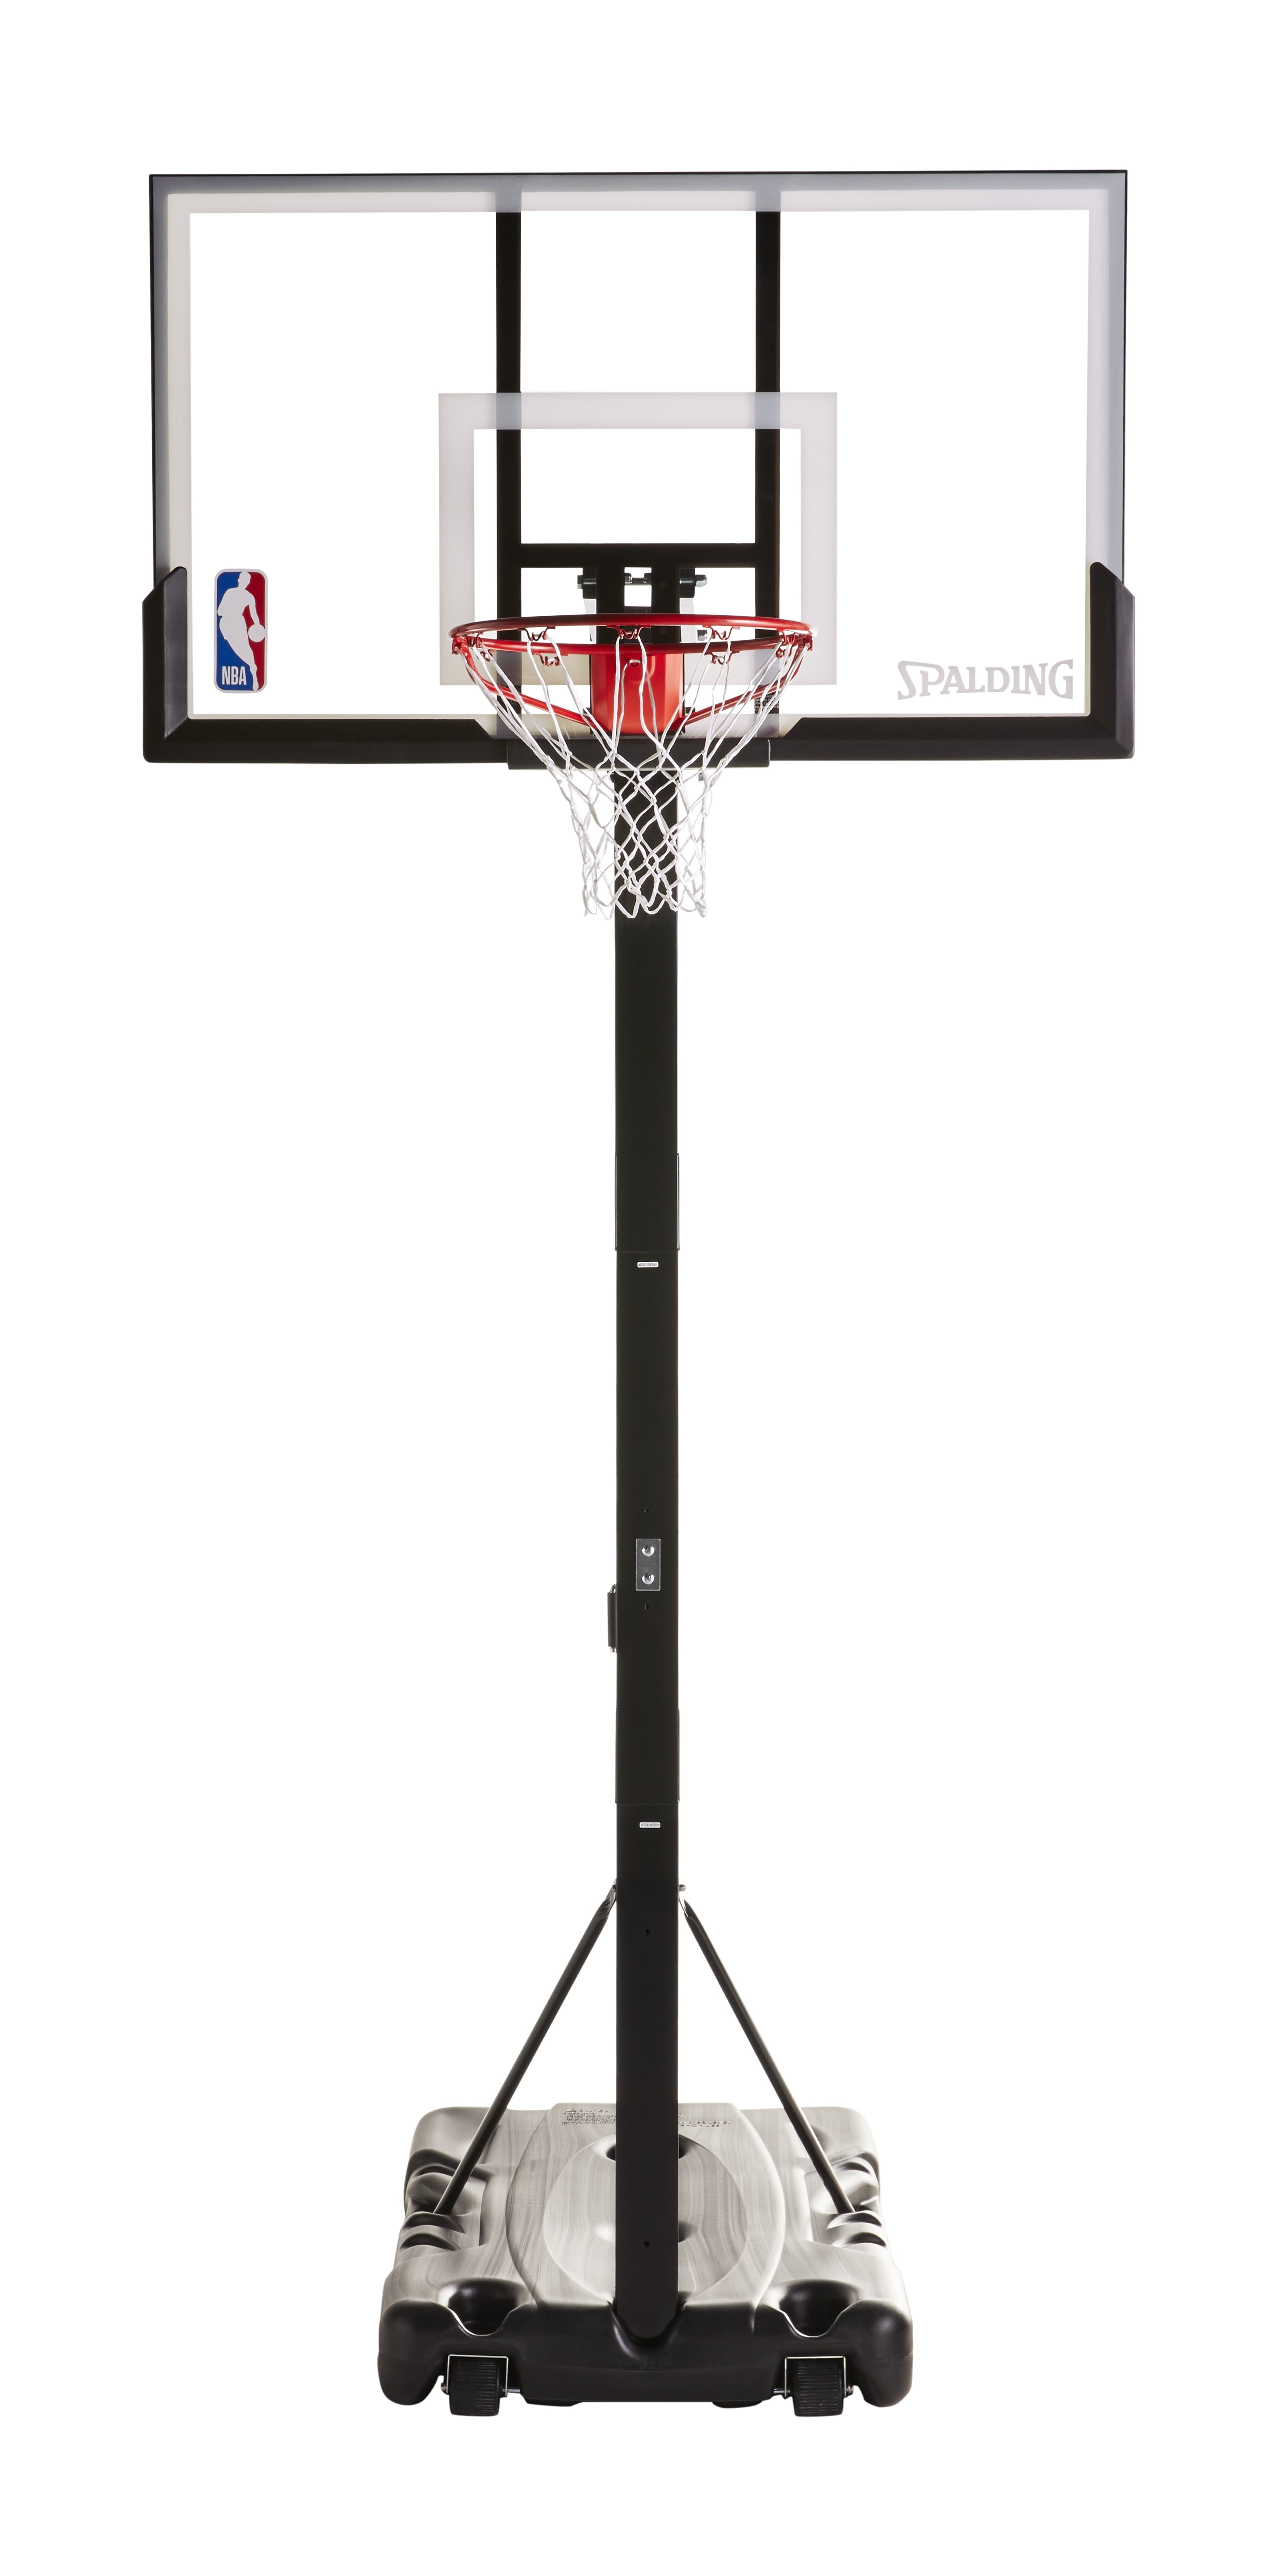 NBA 54 inch Portable Adjustable Basketball Hoop, Shatter-Resistant Backboard, Removable Rebounder360